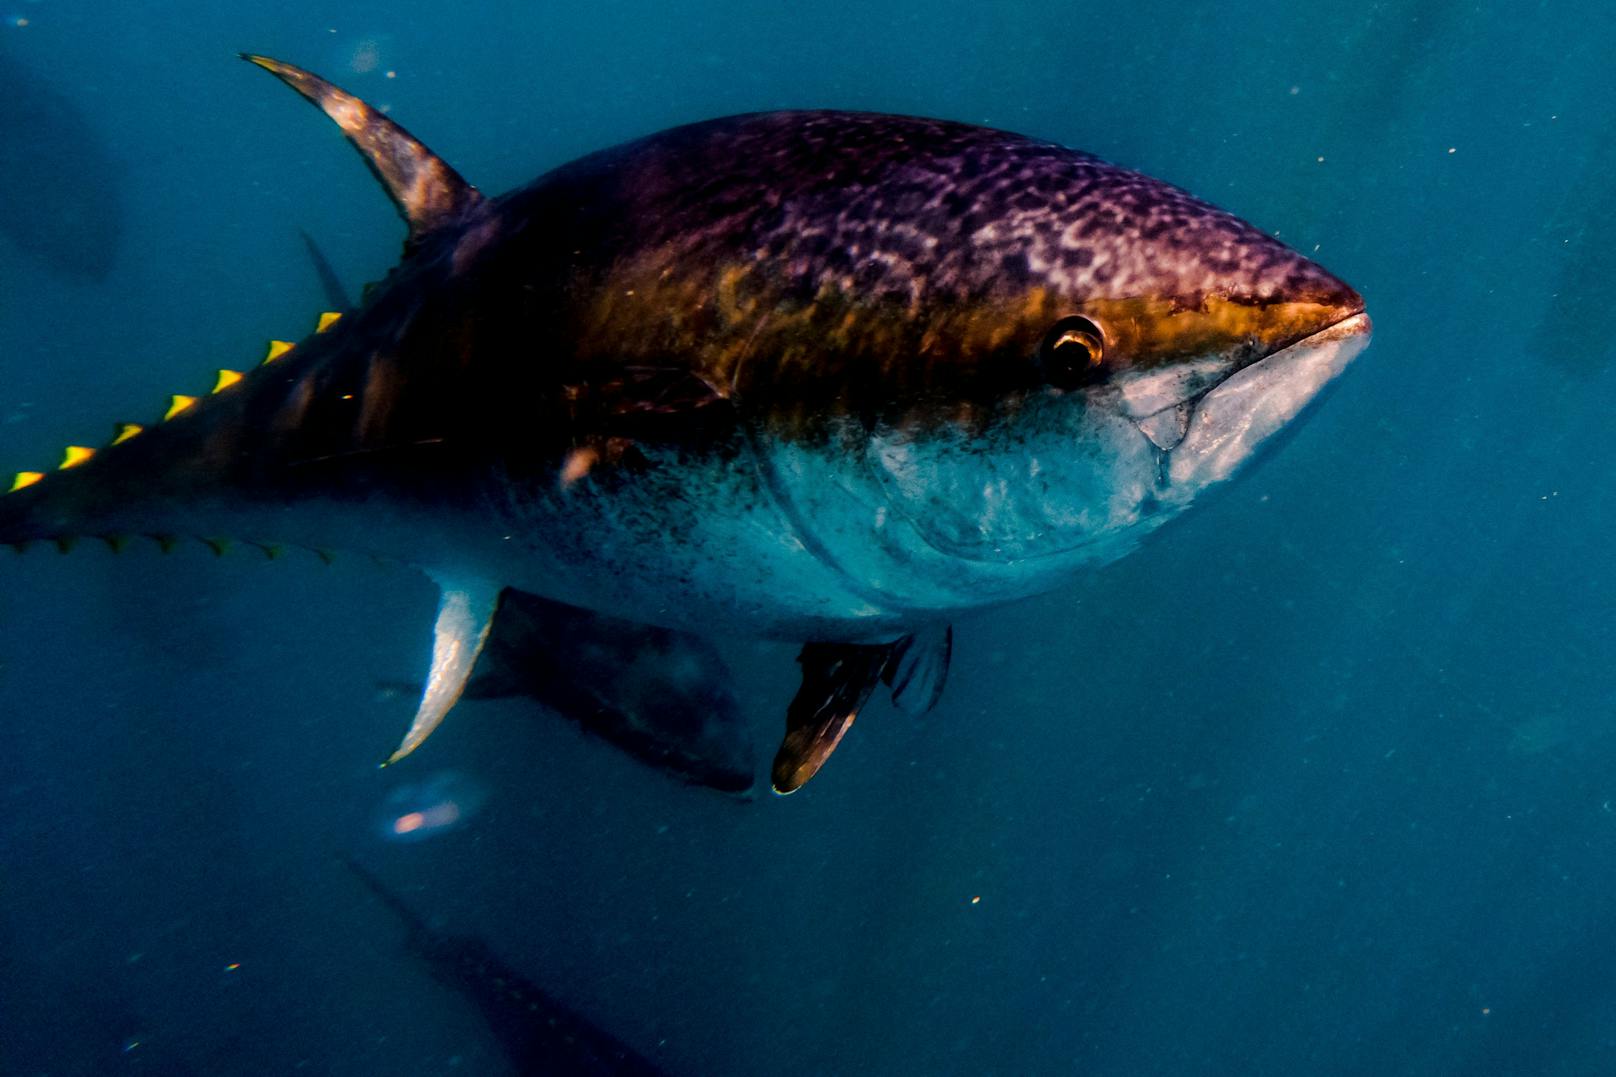 Der Thunfisch ist generell ein "Spätentwickler" und wächst sehr langsam. Da auch die Geschlechtsreife erst vergleichsweise spät einsetzt, kommt der Bestand unserer Überfischung nicht nach. <br>